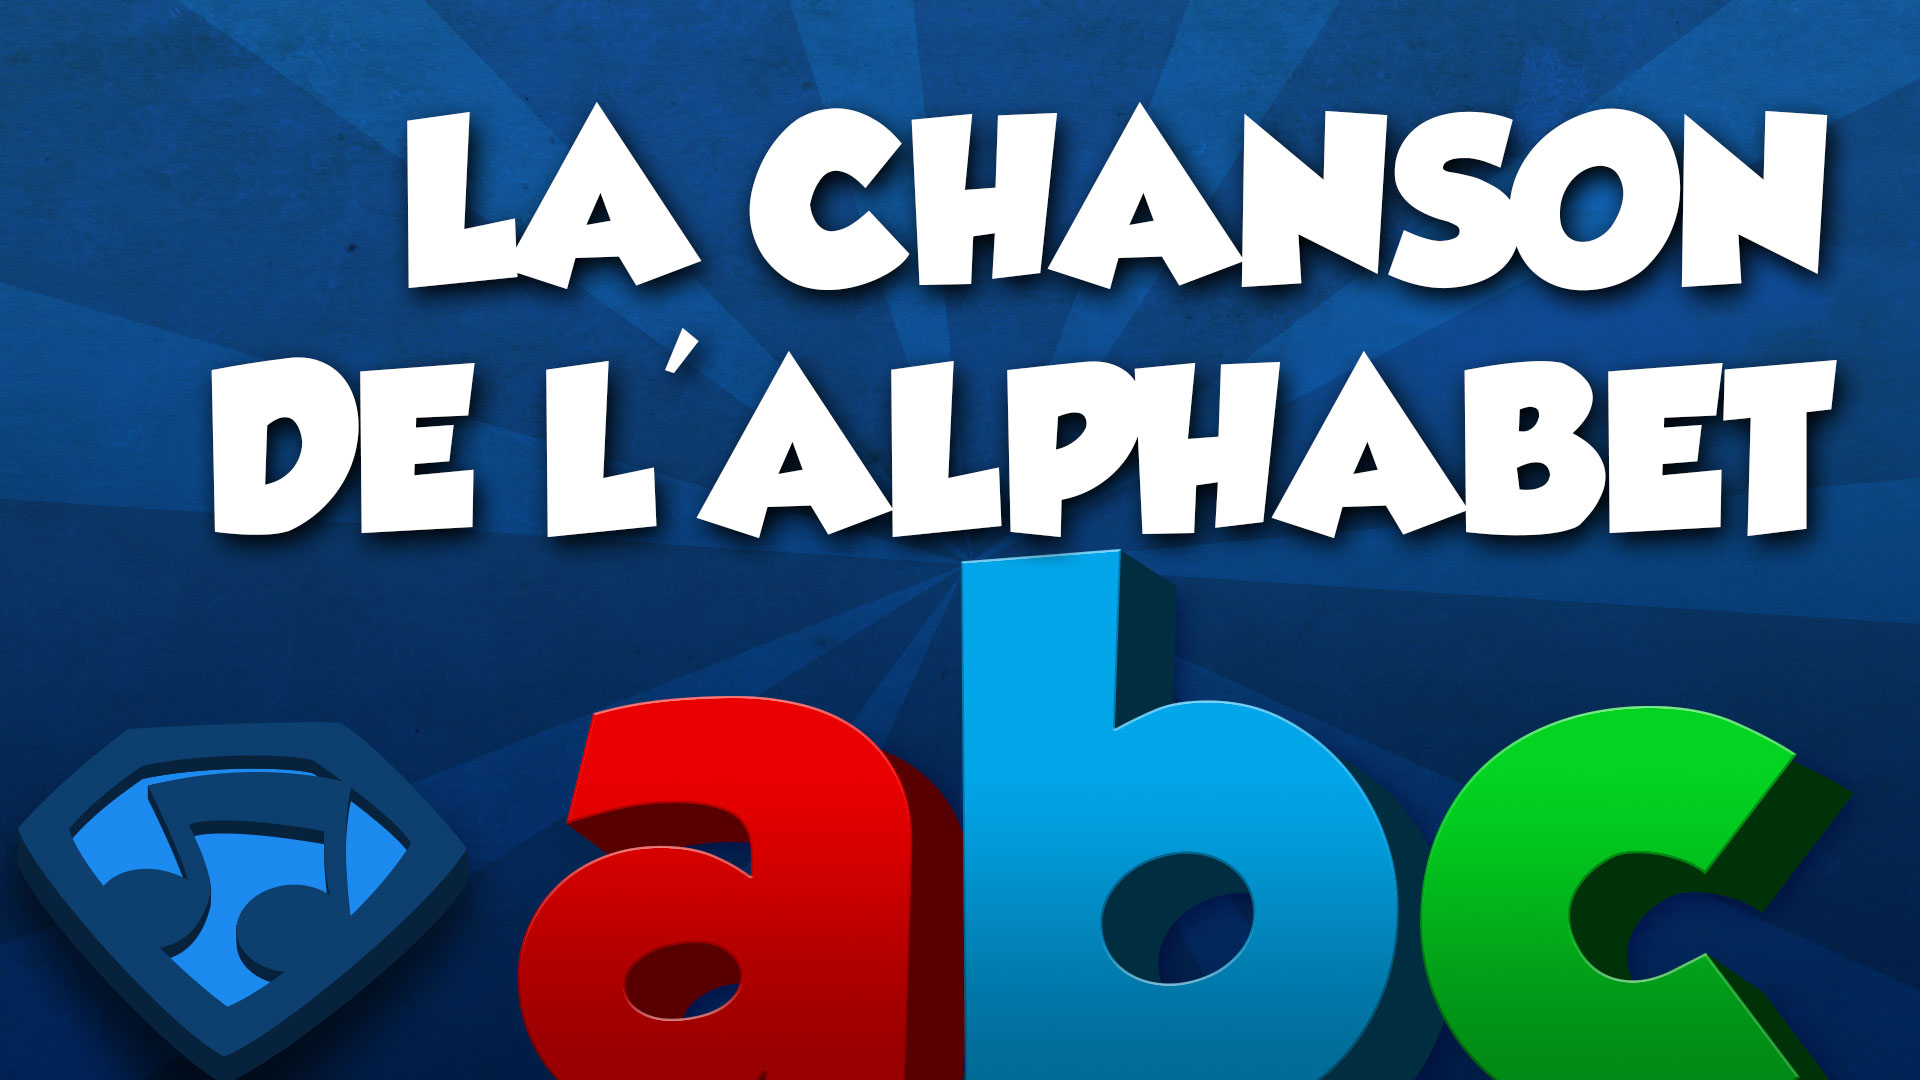 Miniature du vidéo La Chanson de l'Alphabet (Lettres Minuscules). Cliquez pour écouter le vidéo.